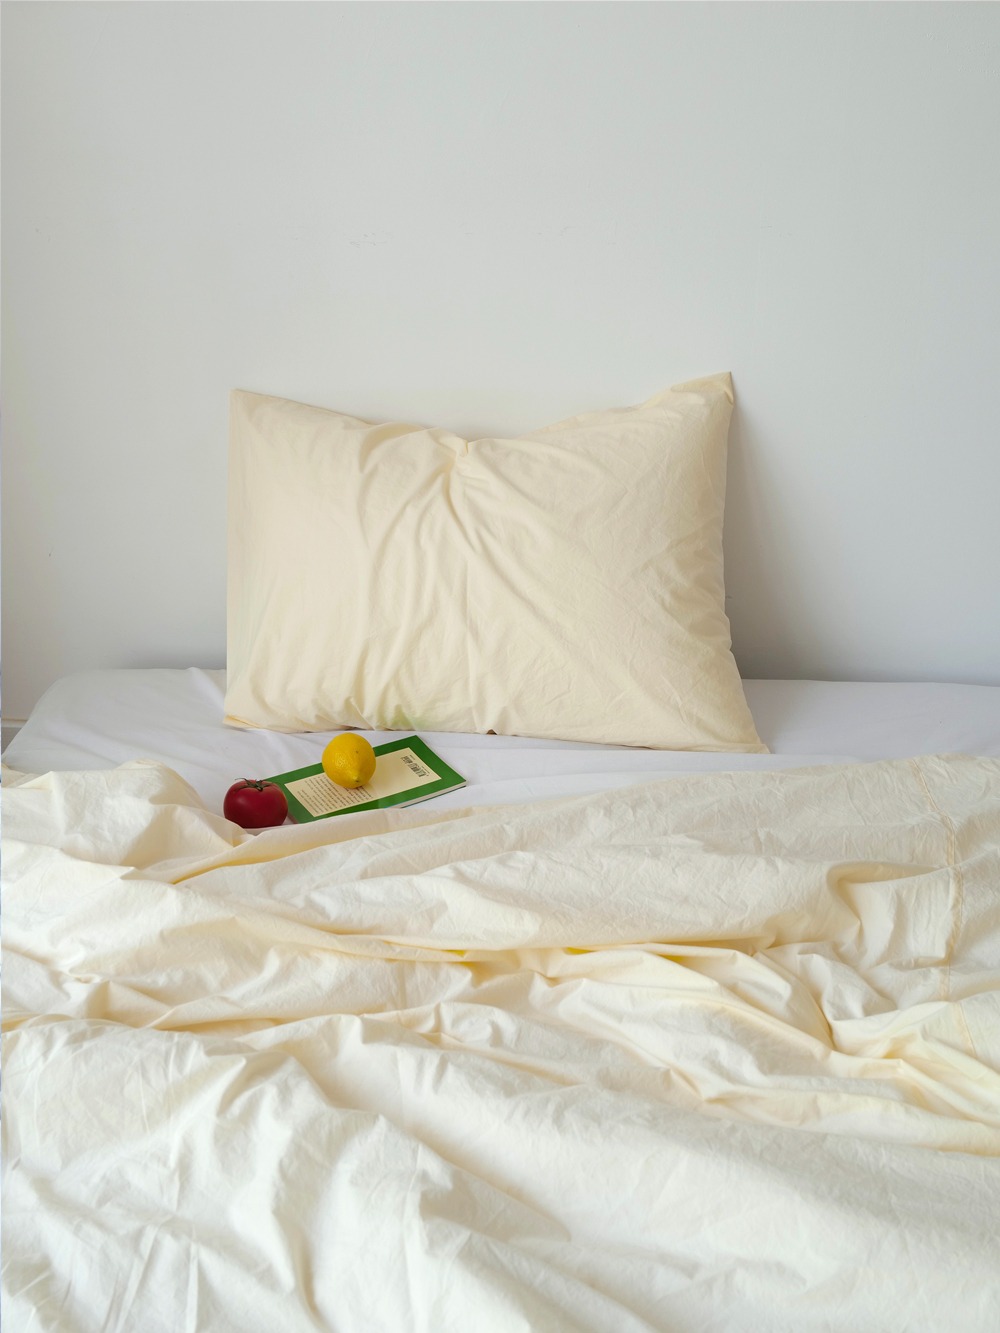 Lemon cream pillow cover